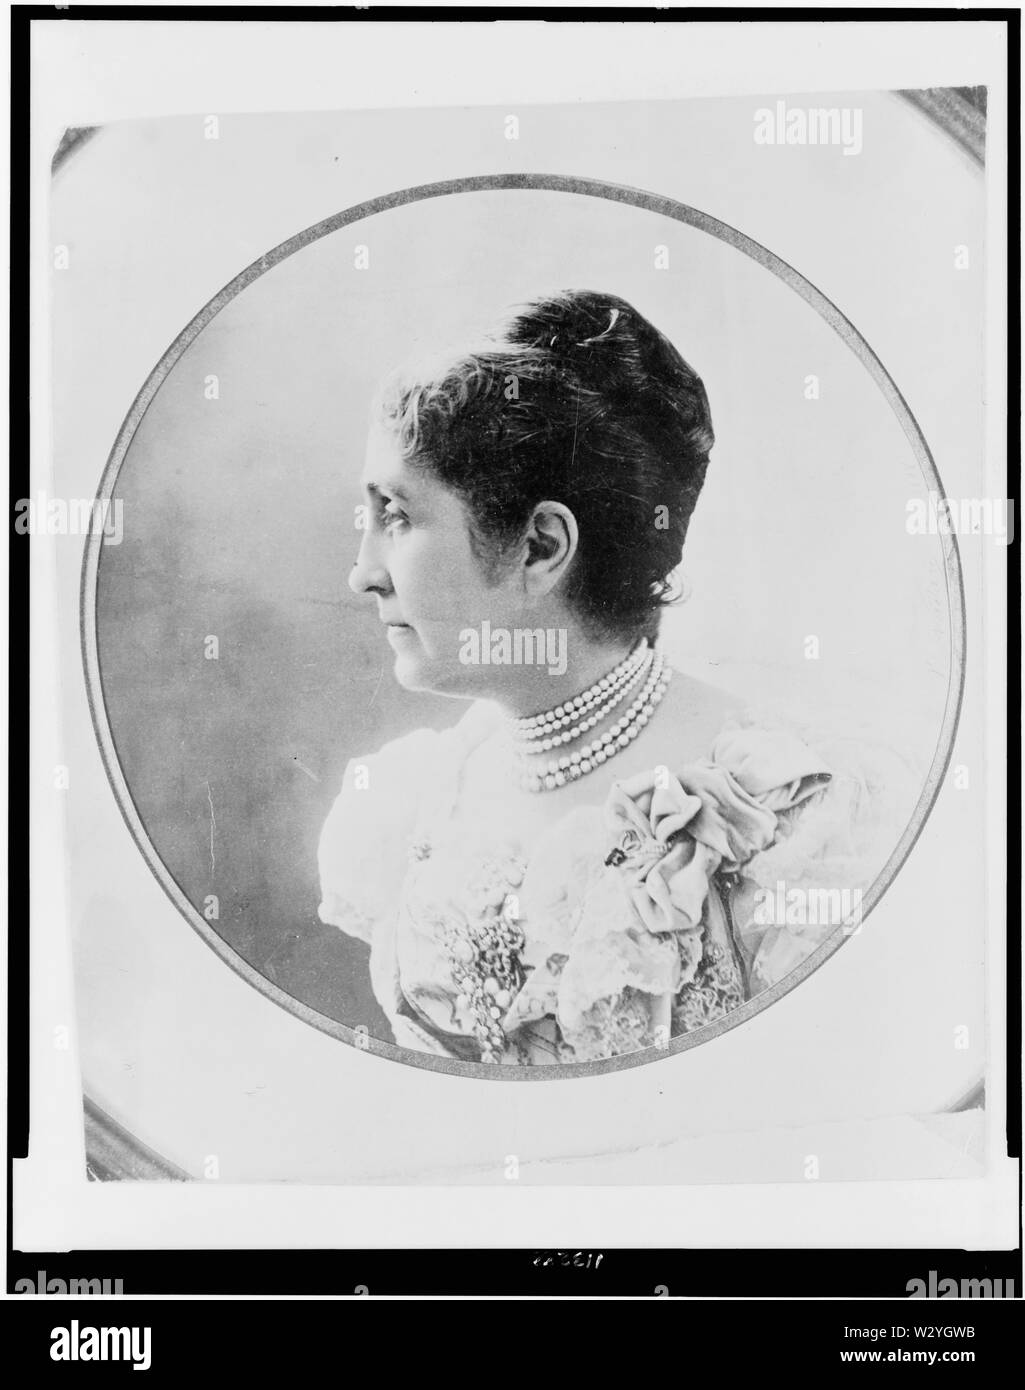 Testa e spalle ritratto del filantropo americano, femminista e suffragist Phoebe Hearst (1842-1919), rivolto verso sinistra. Stampa fotografica. Foto Stock